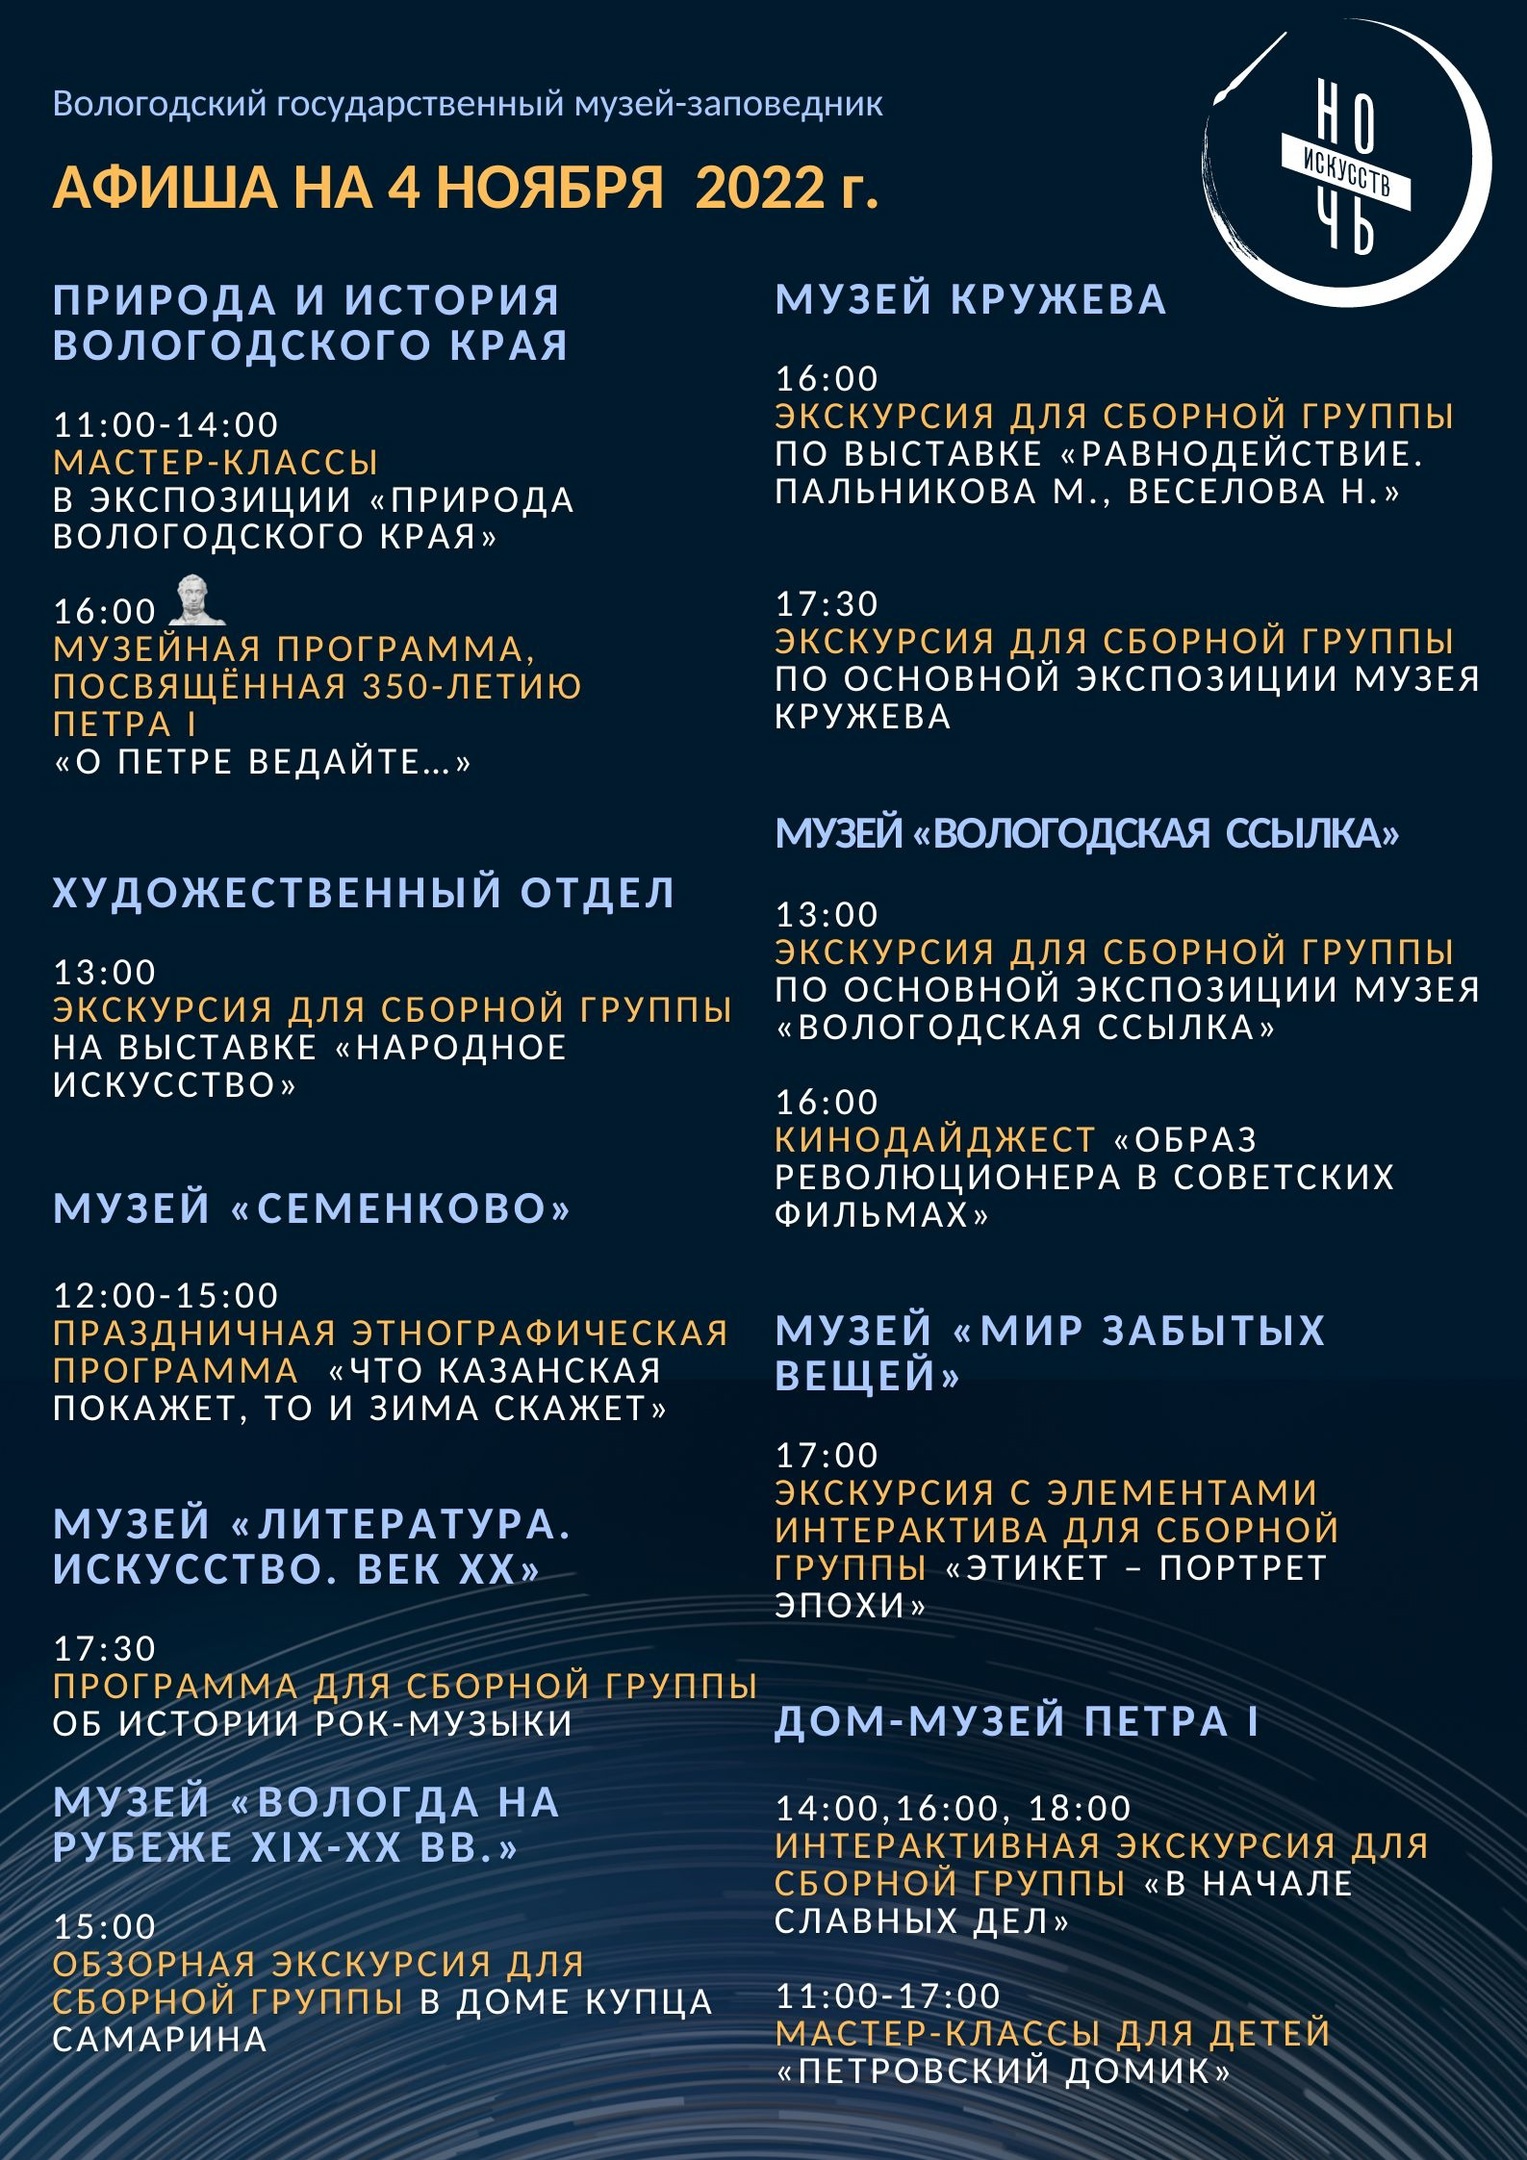 Акция «Ночь искусств» пройдет в Вологде 4 ноября